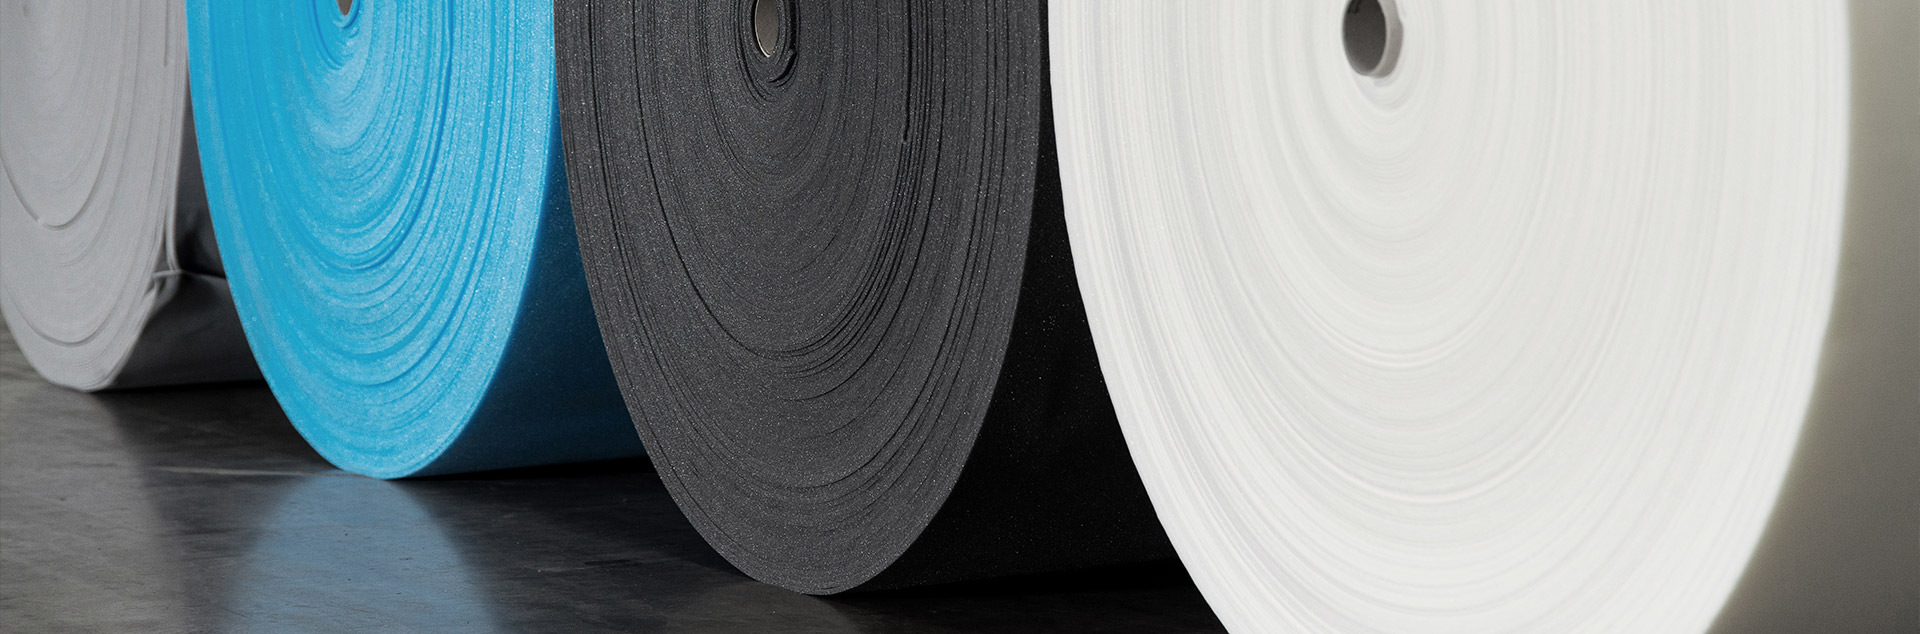 PE30 - Polyethylene Foam - Sheets, Foam Sales